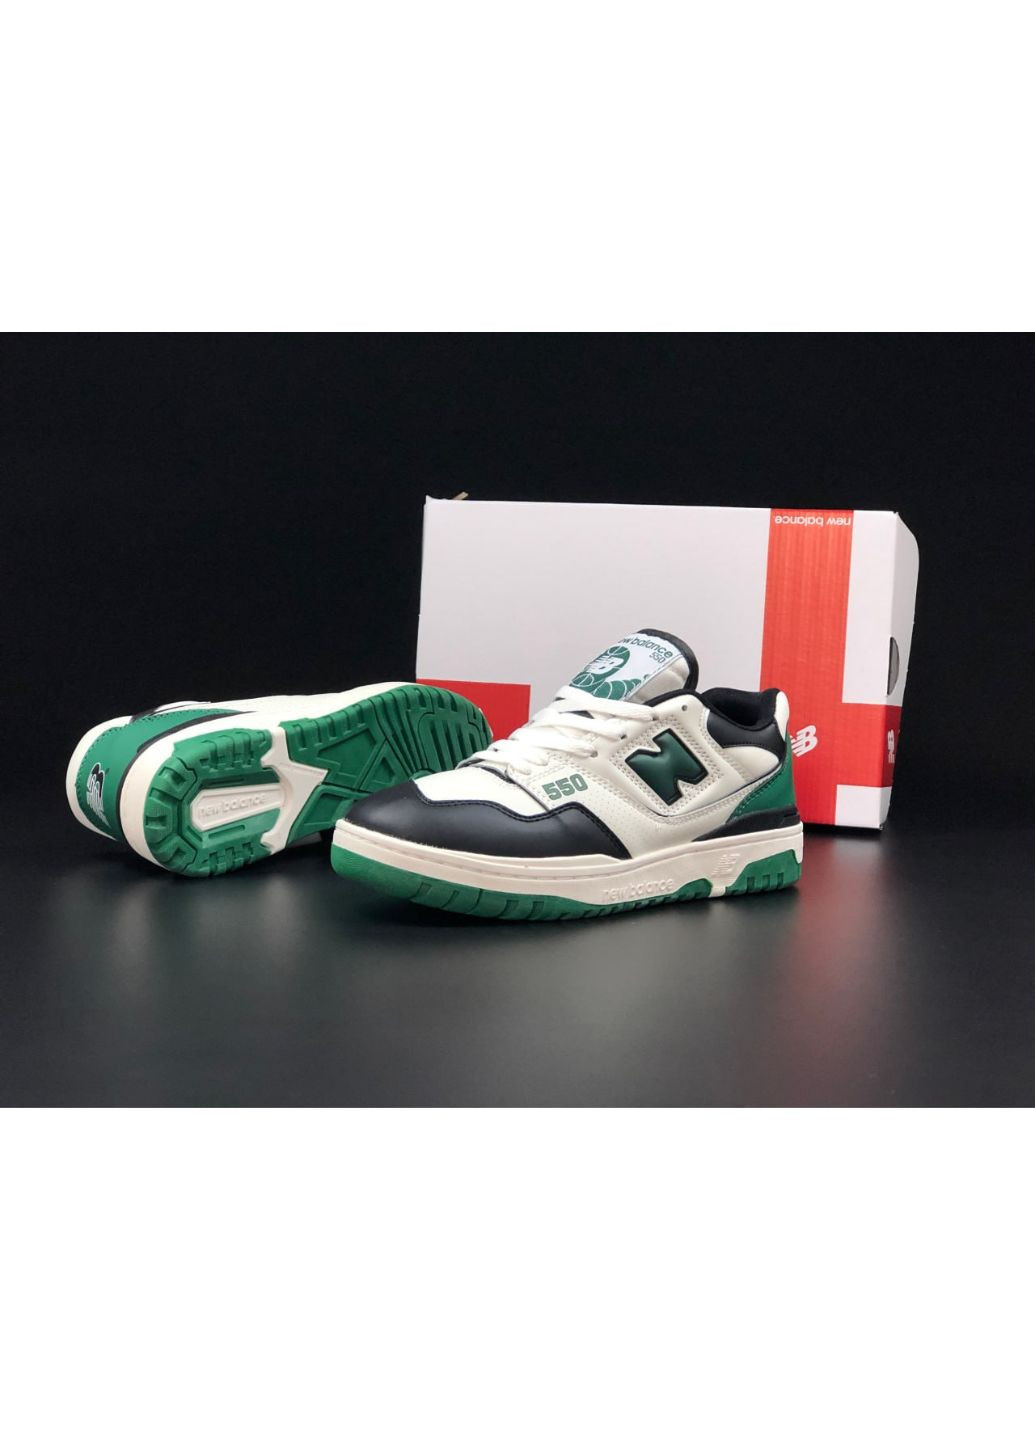 Белые демисезонные мужские кроссовки белые с зеленым "no name" New Balance 550